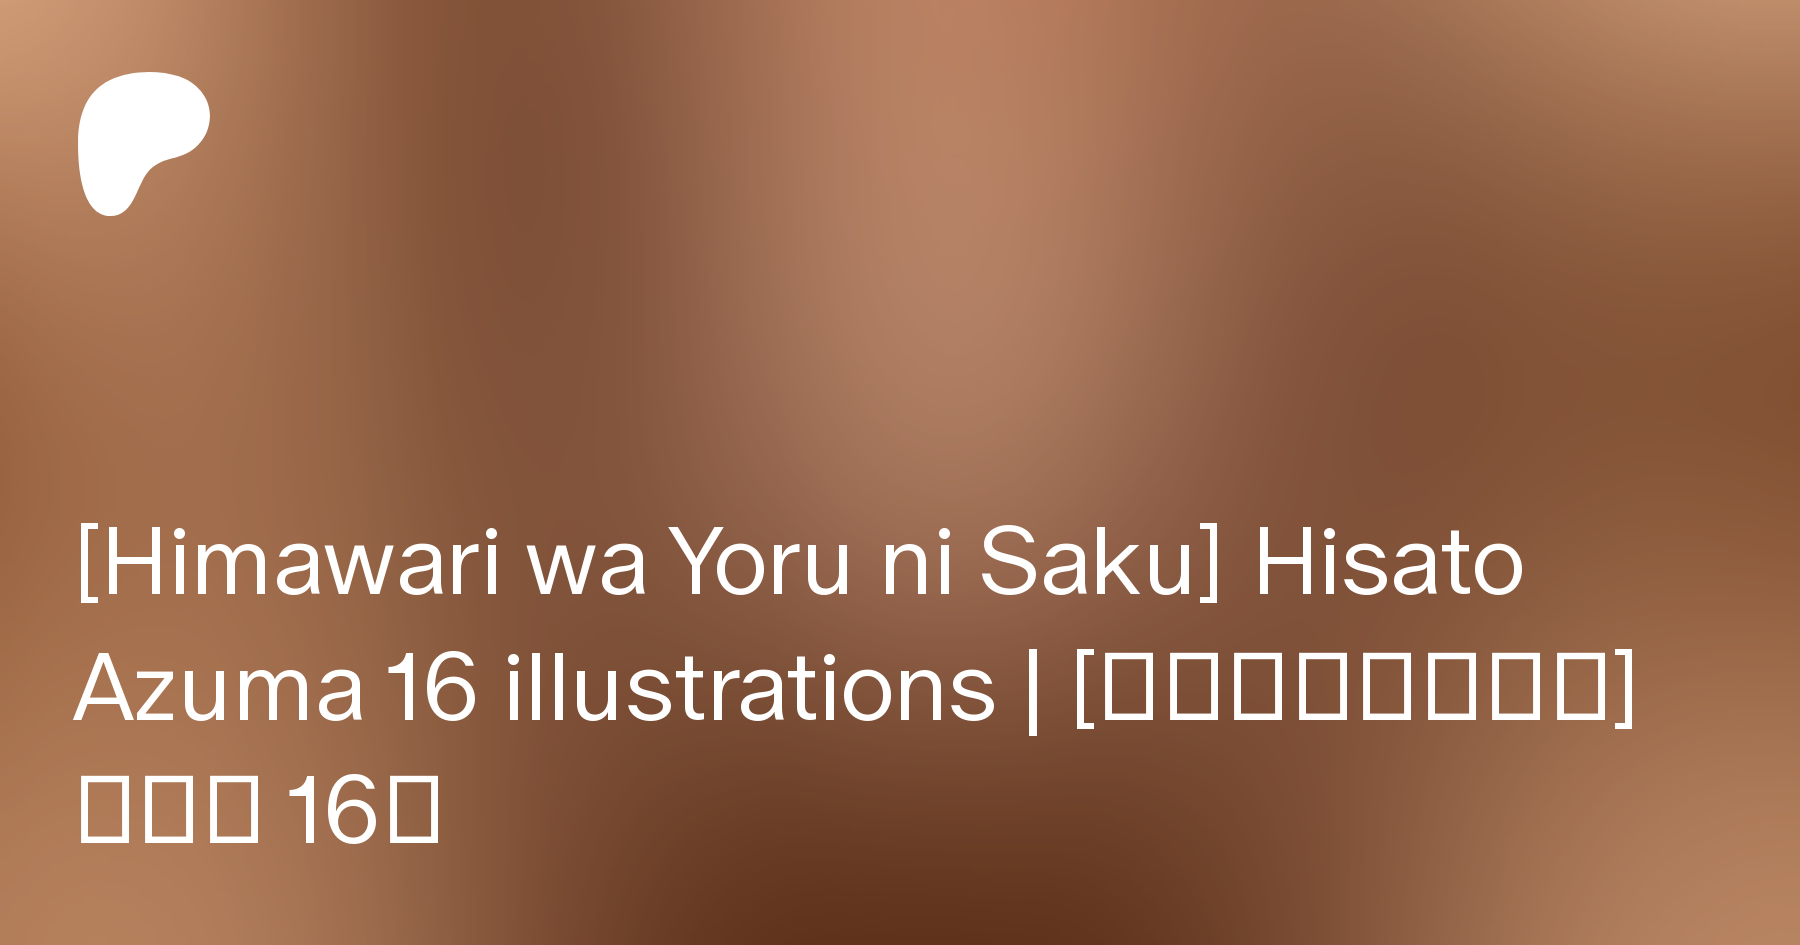 Himawari Ni Yoru Ni Saku Himawari wa Yoru ni Saku] Hisato Azuma 16 illustrations | [向日葵ハ夜ニ咲ク] 東陽里  16枚 | Patreon